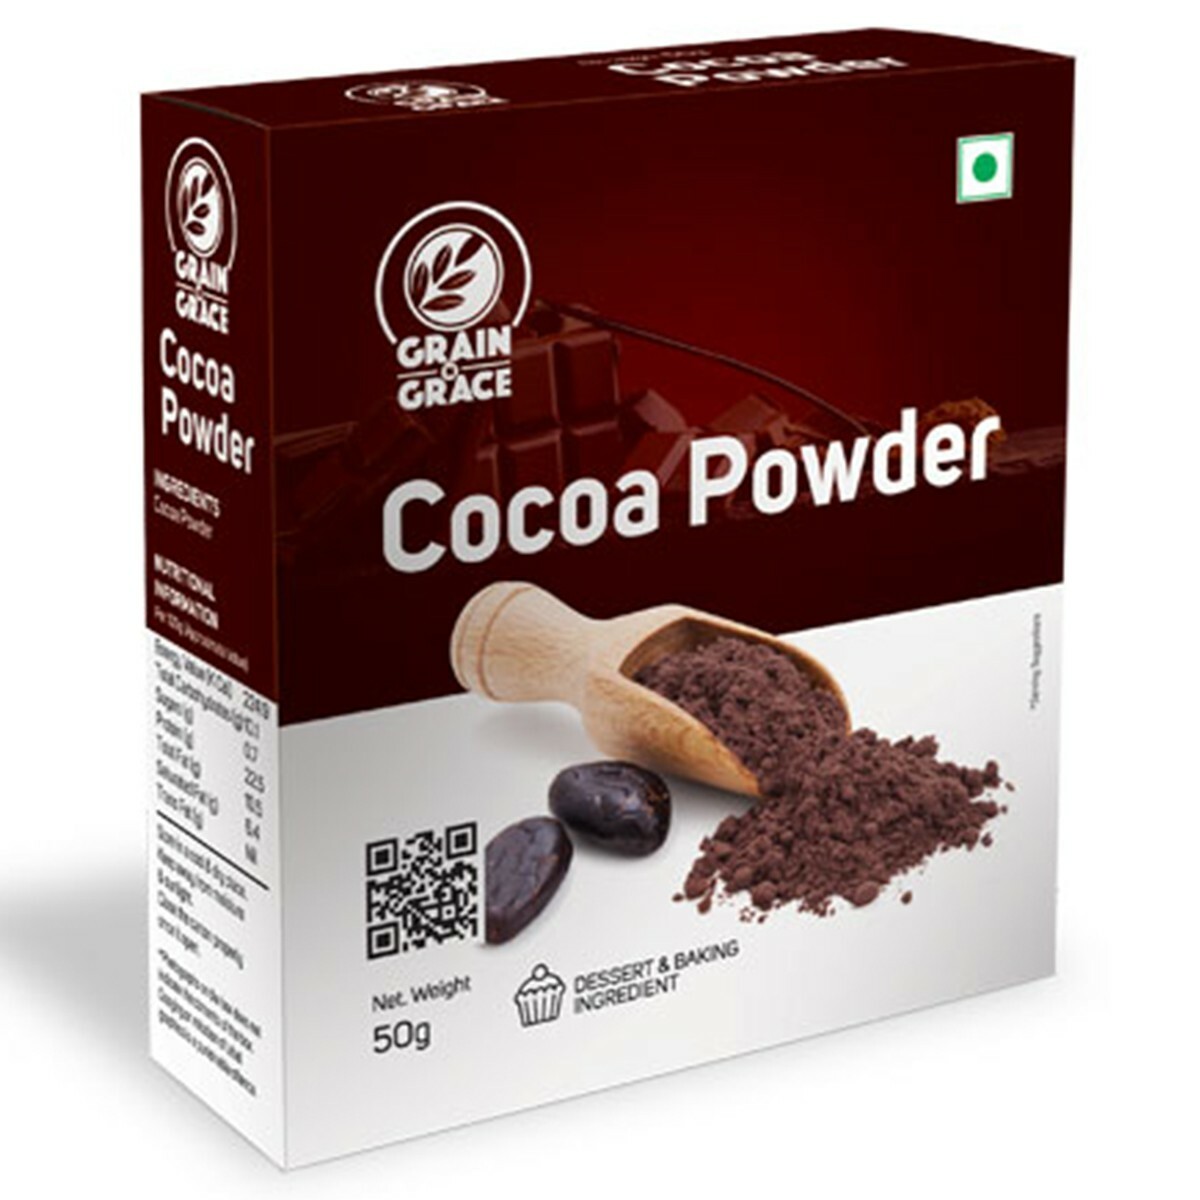 Grain Grace Cocoa Powder 50g